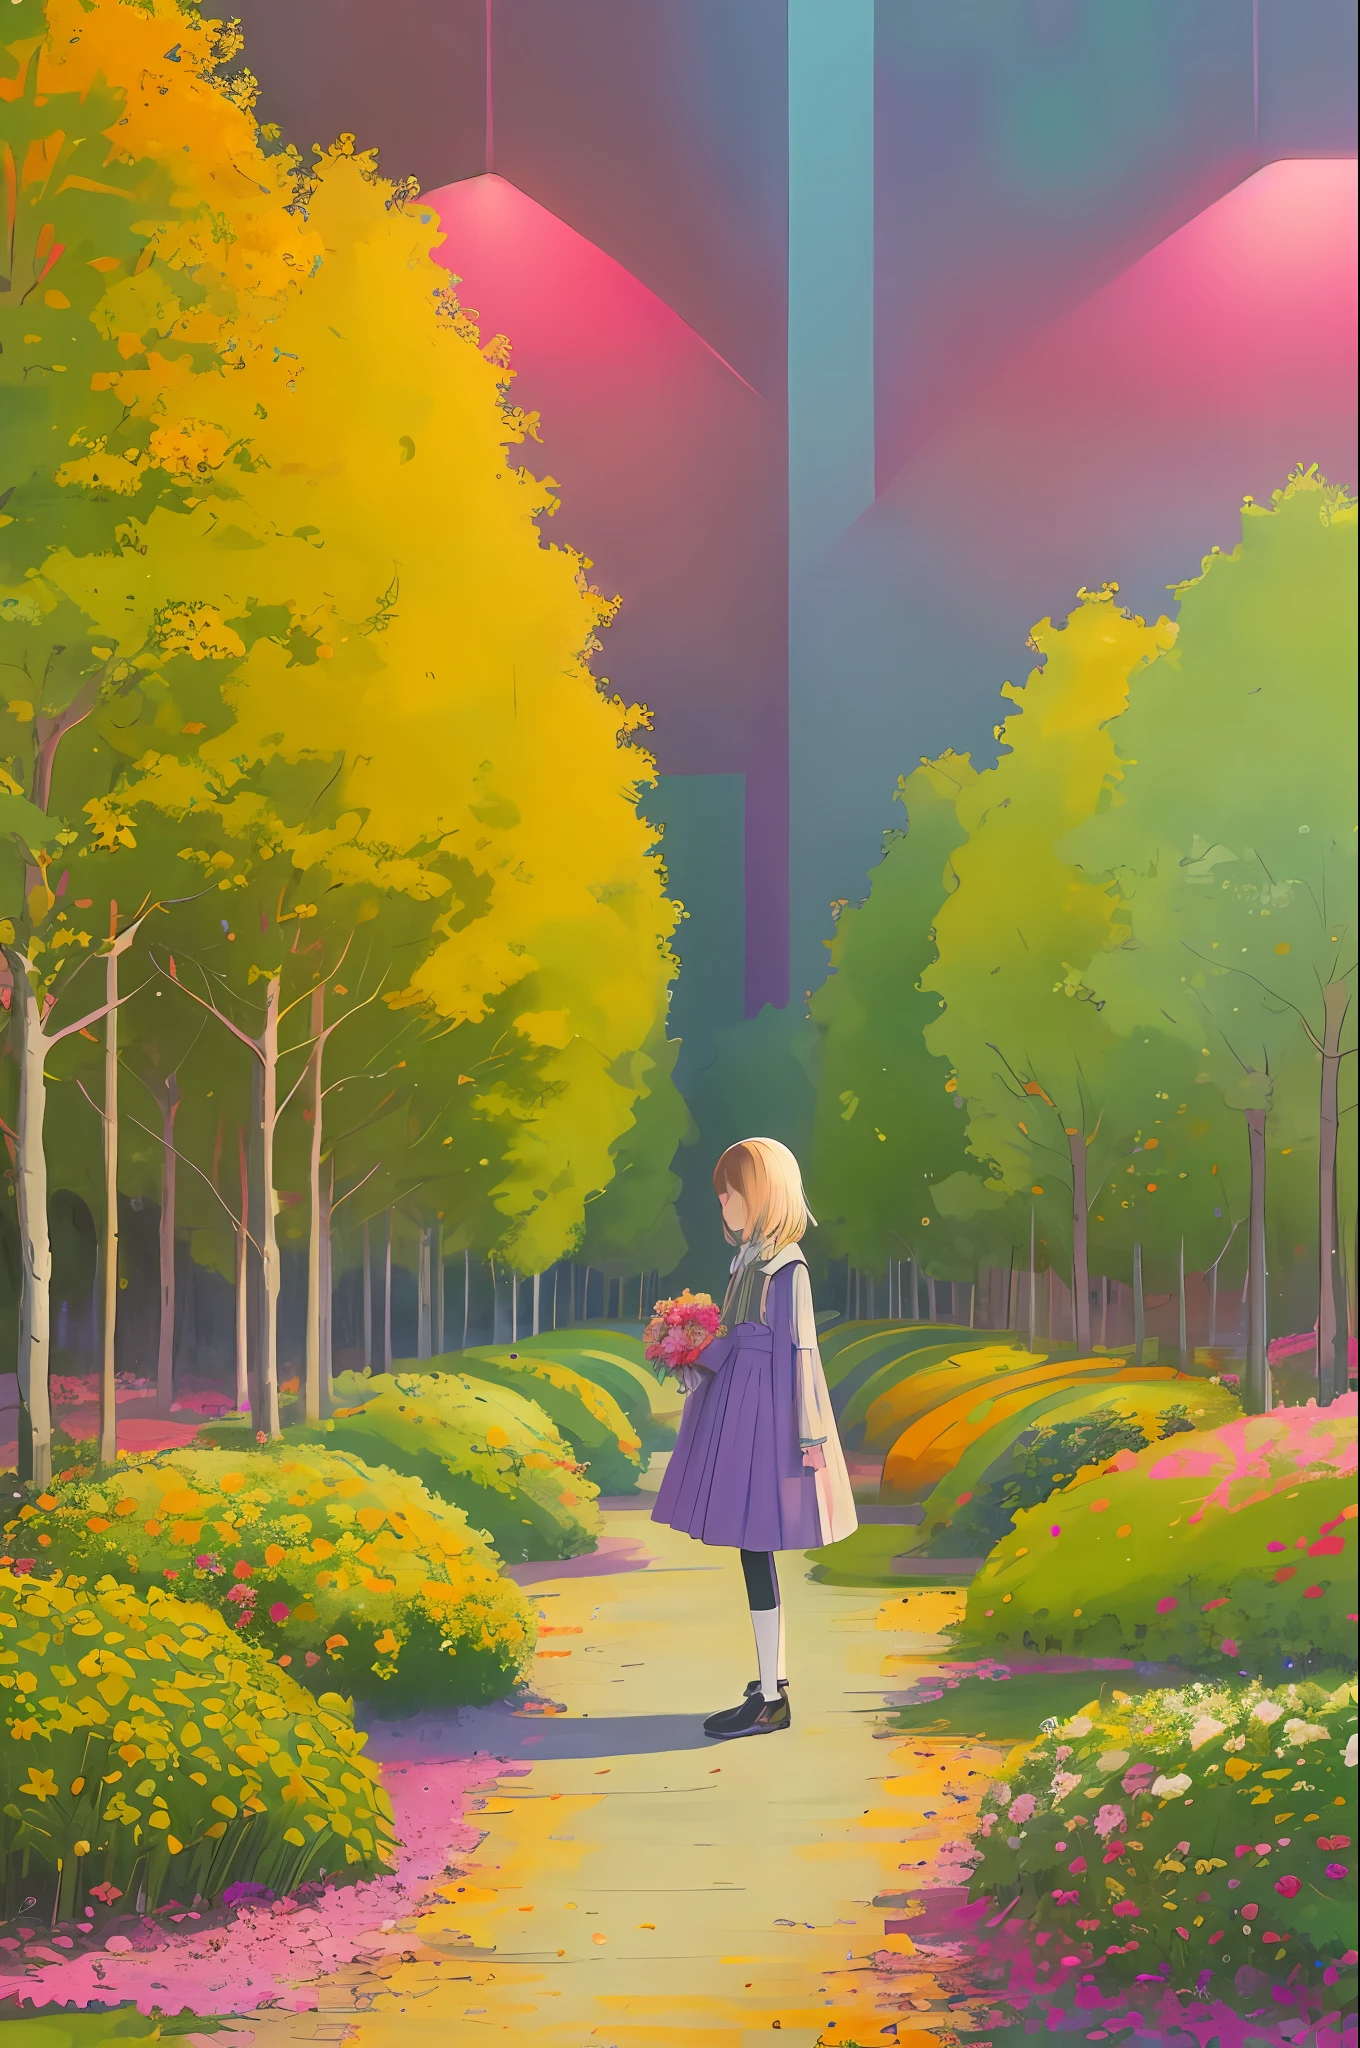 Polychrome, begrenzte Palette, Bunt, Landschaft, 1 Mädchen, Regenbogen, Grüne Stadt,, detaillierter Hintergrund, Meisterwerk, beste Qualität,